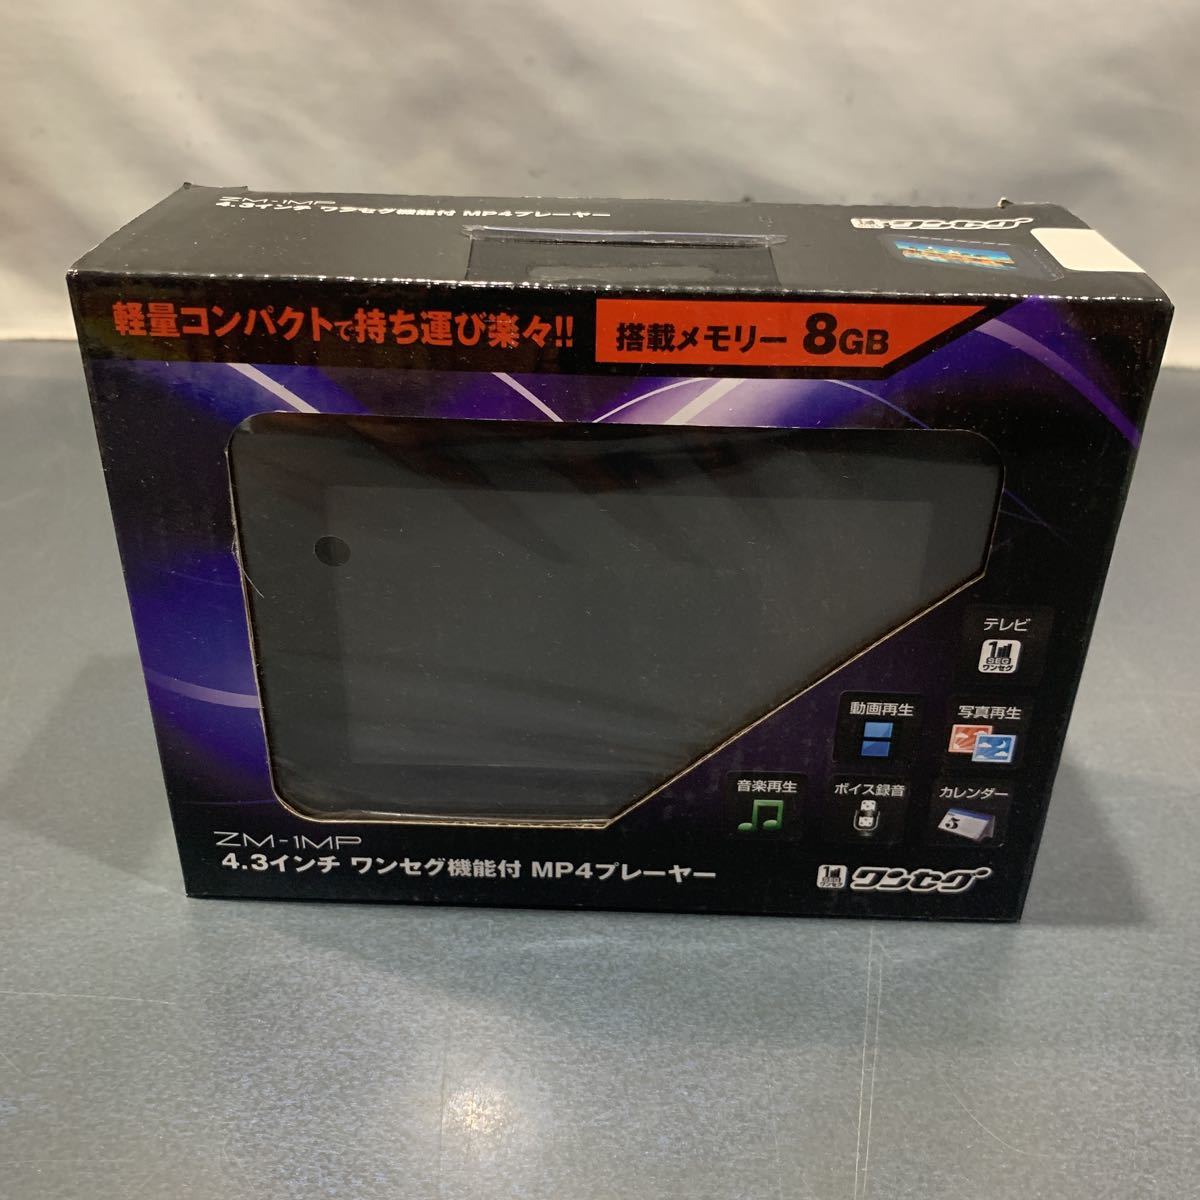 新品 未開封 未使用品 4.3インチワンセグ機能付 MP4プレイヤー 8GB ZM-1MP ポータブルテレビ 複数購入対応可能の画像1